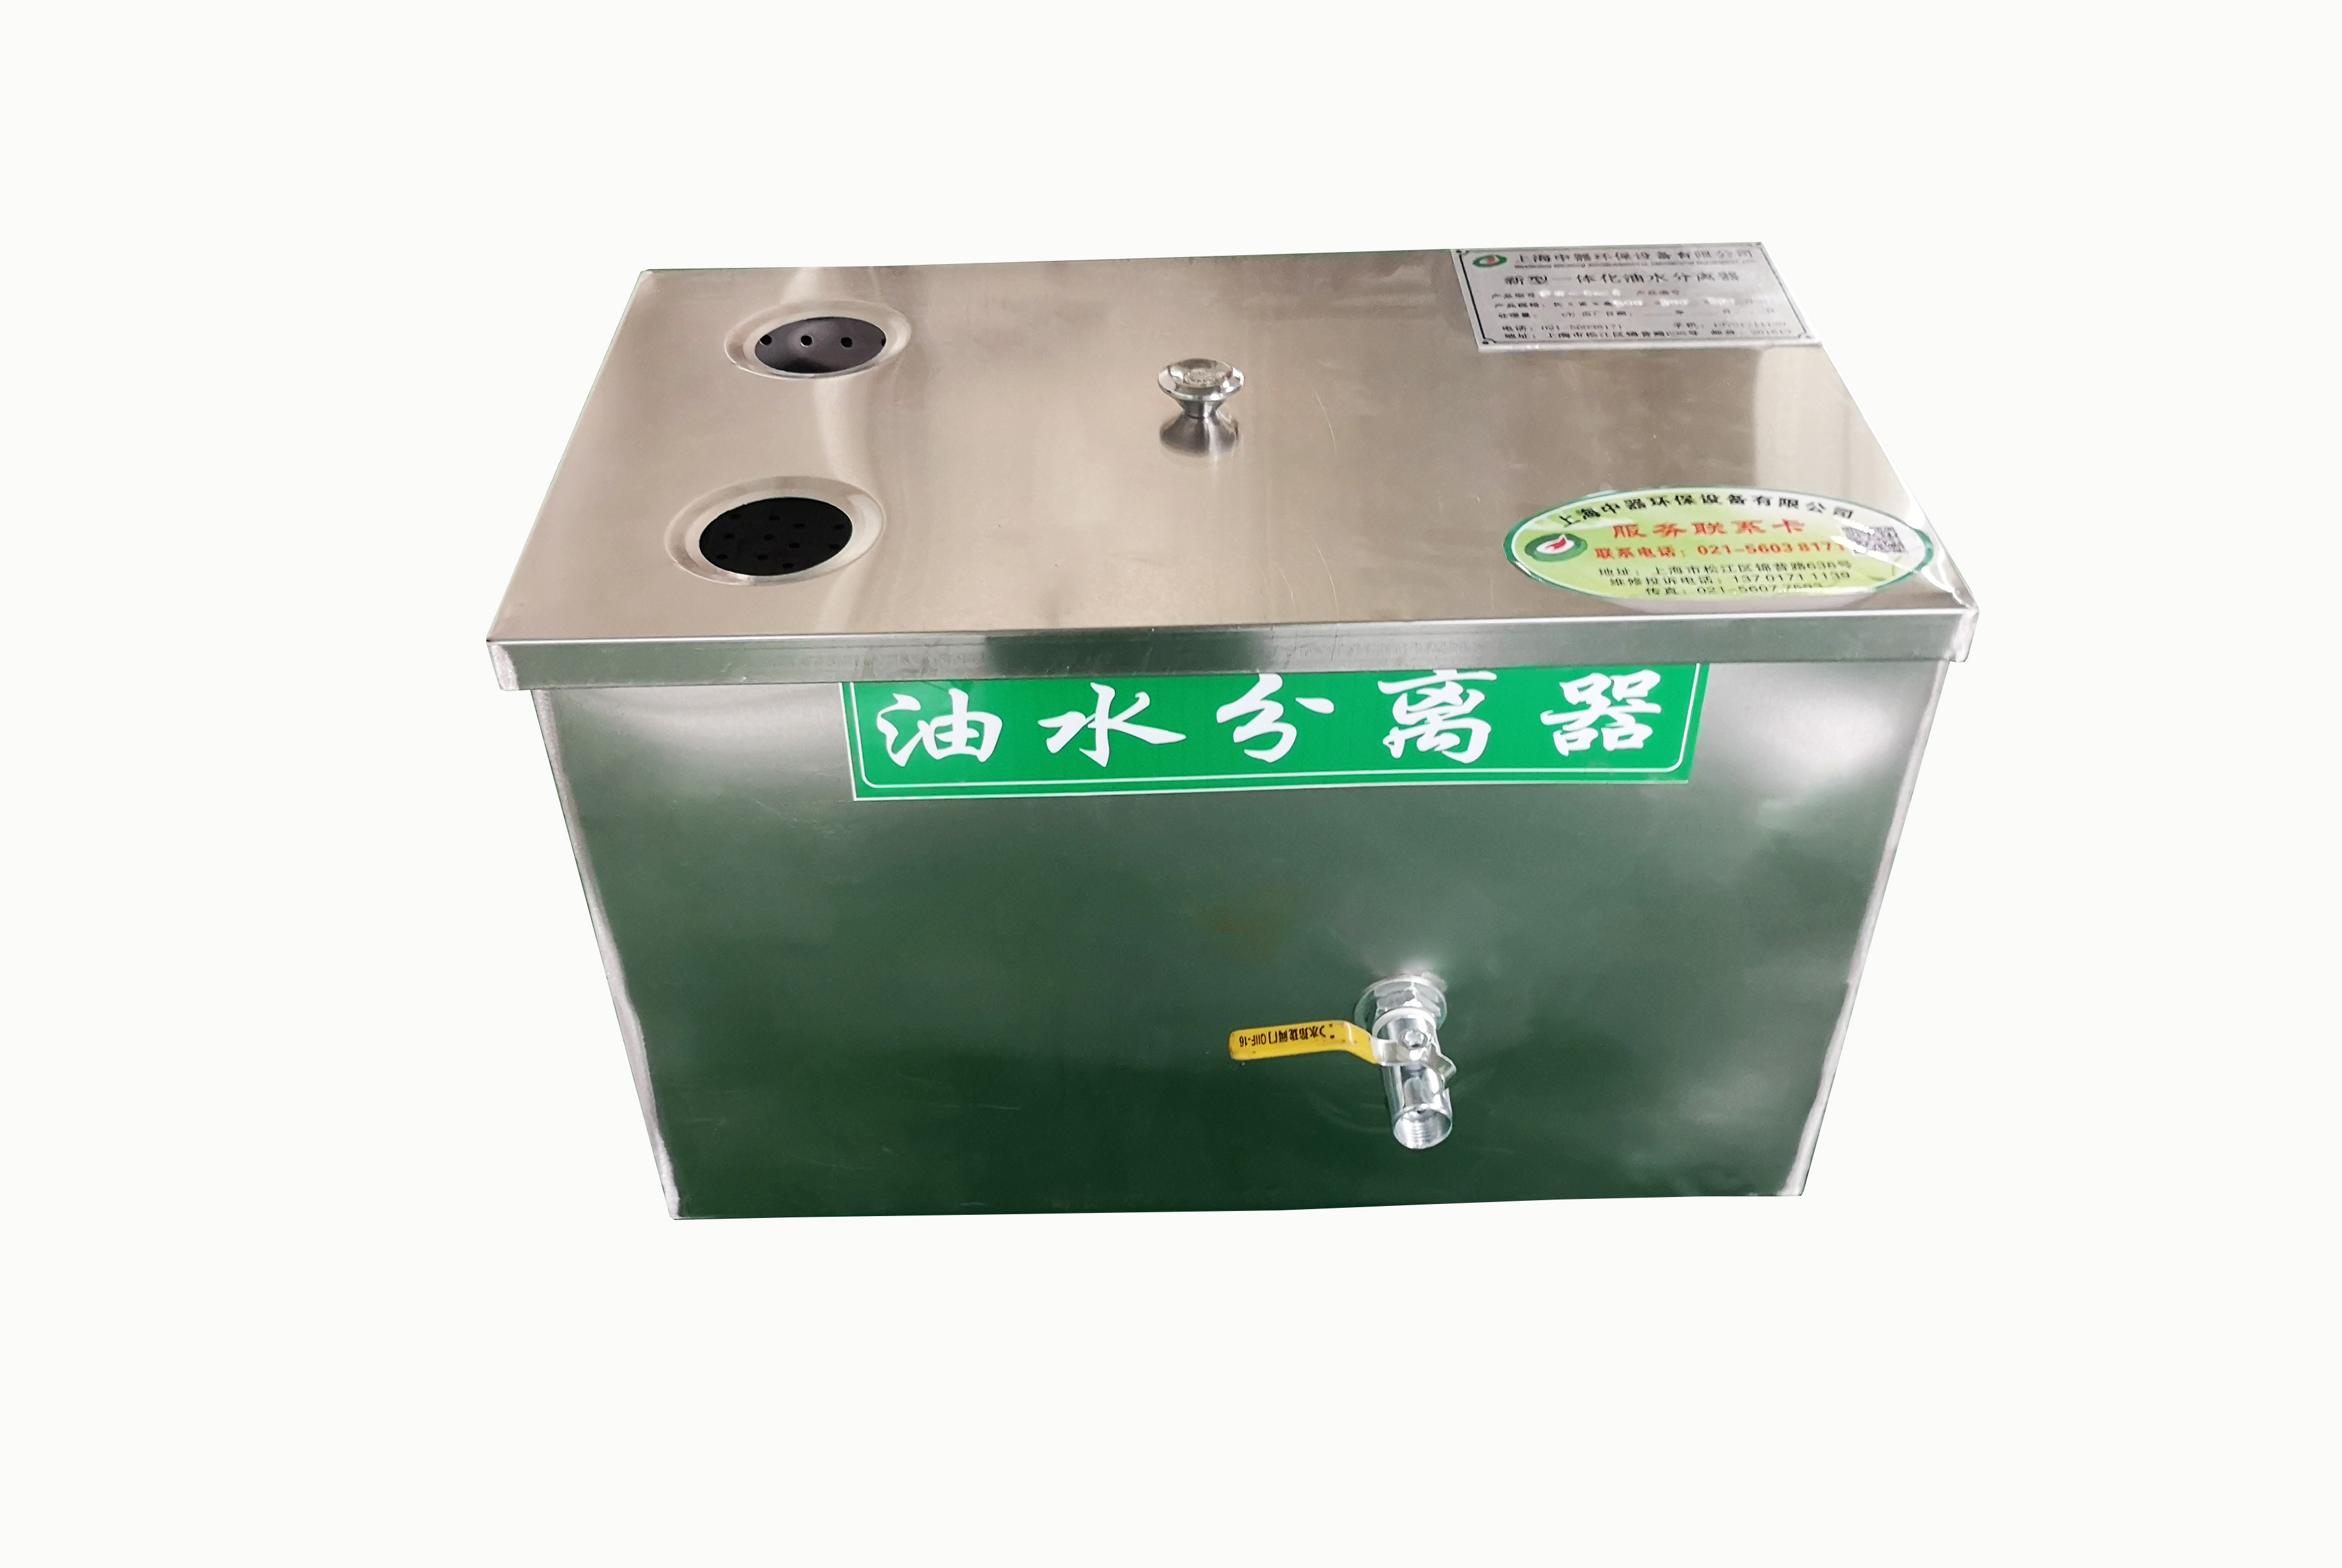 上海地区供应中器PW-C-6餐饮火锅油水分离设备送货上门安装图片